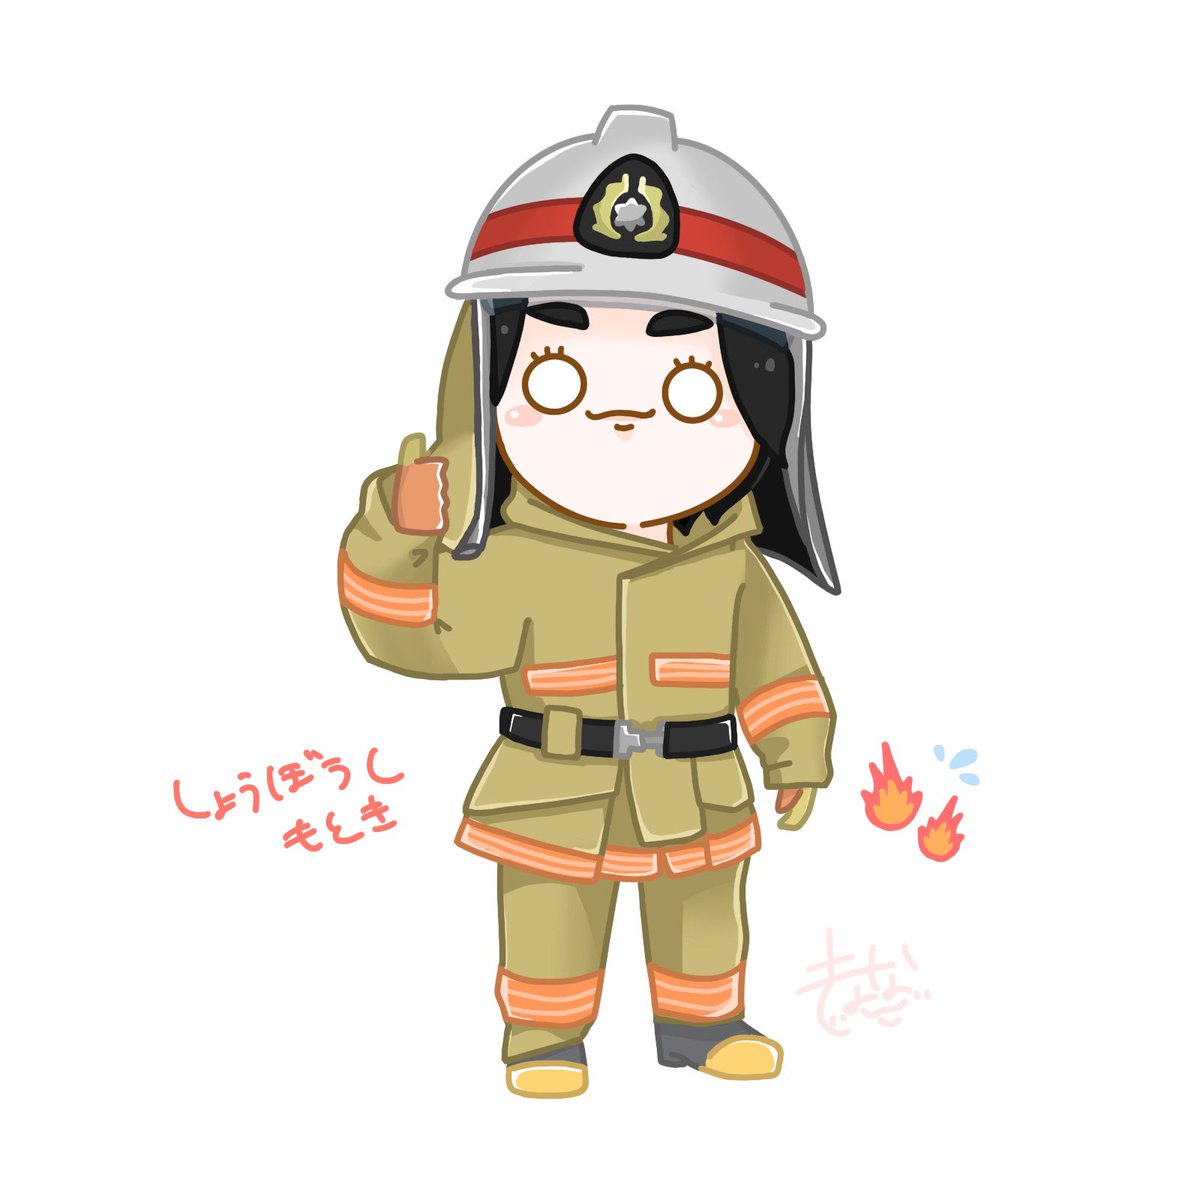 消防士もとき🔥👩‍🚒🚒
#大森元貴